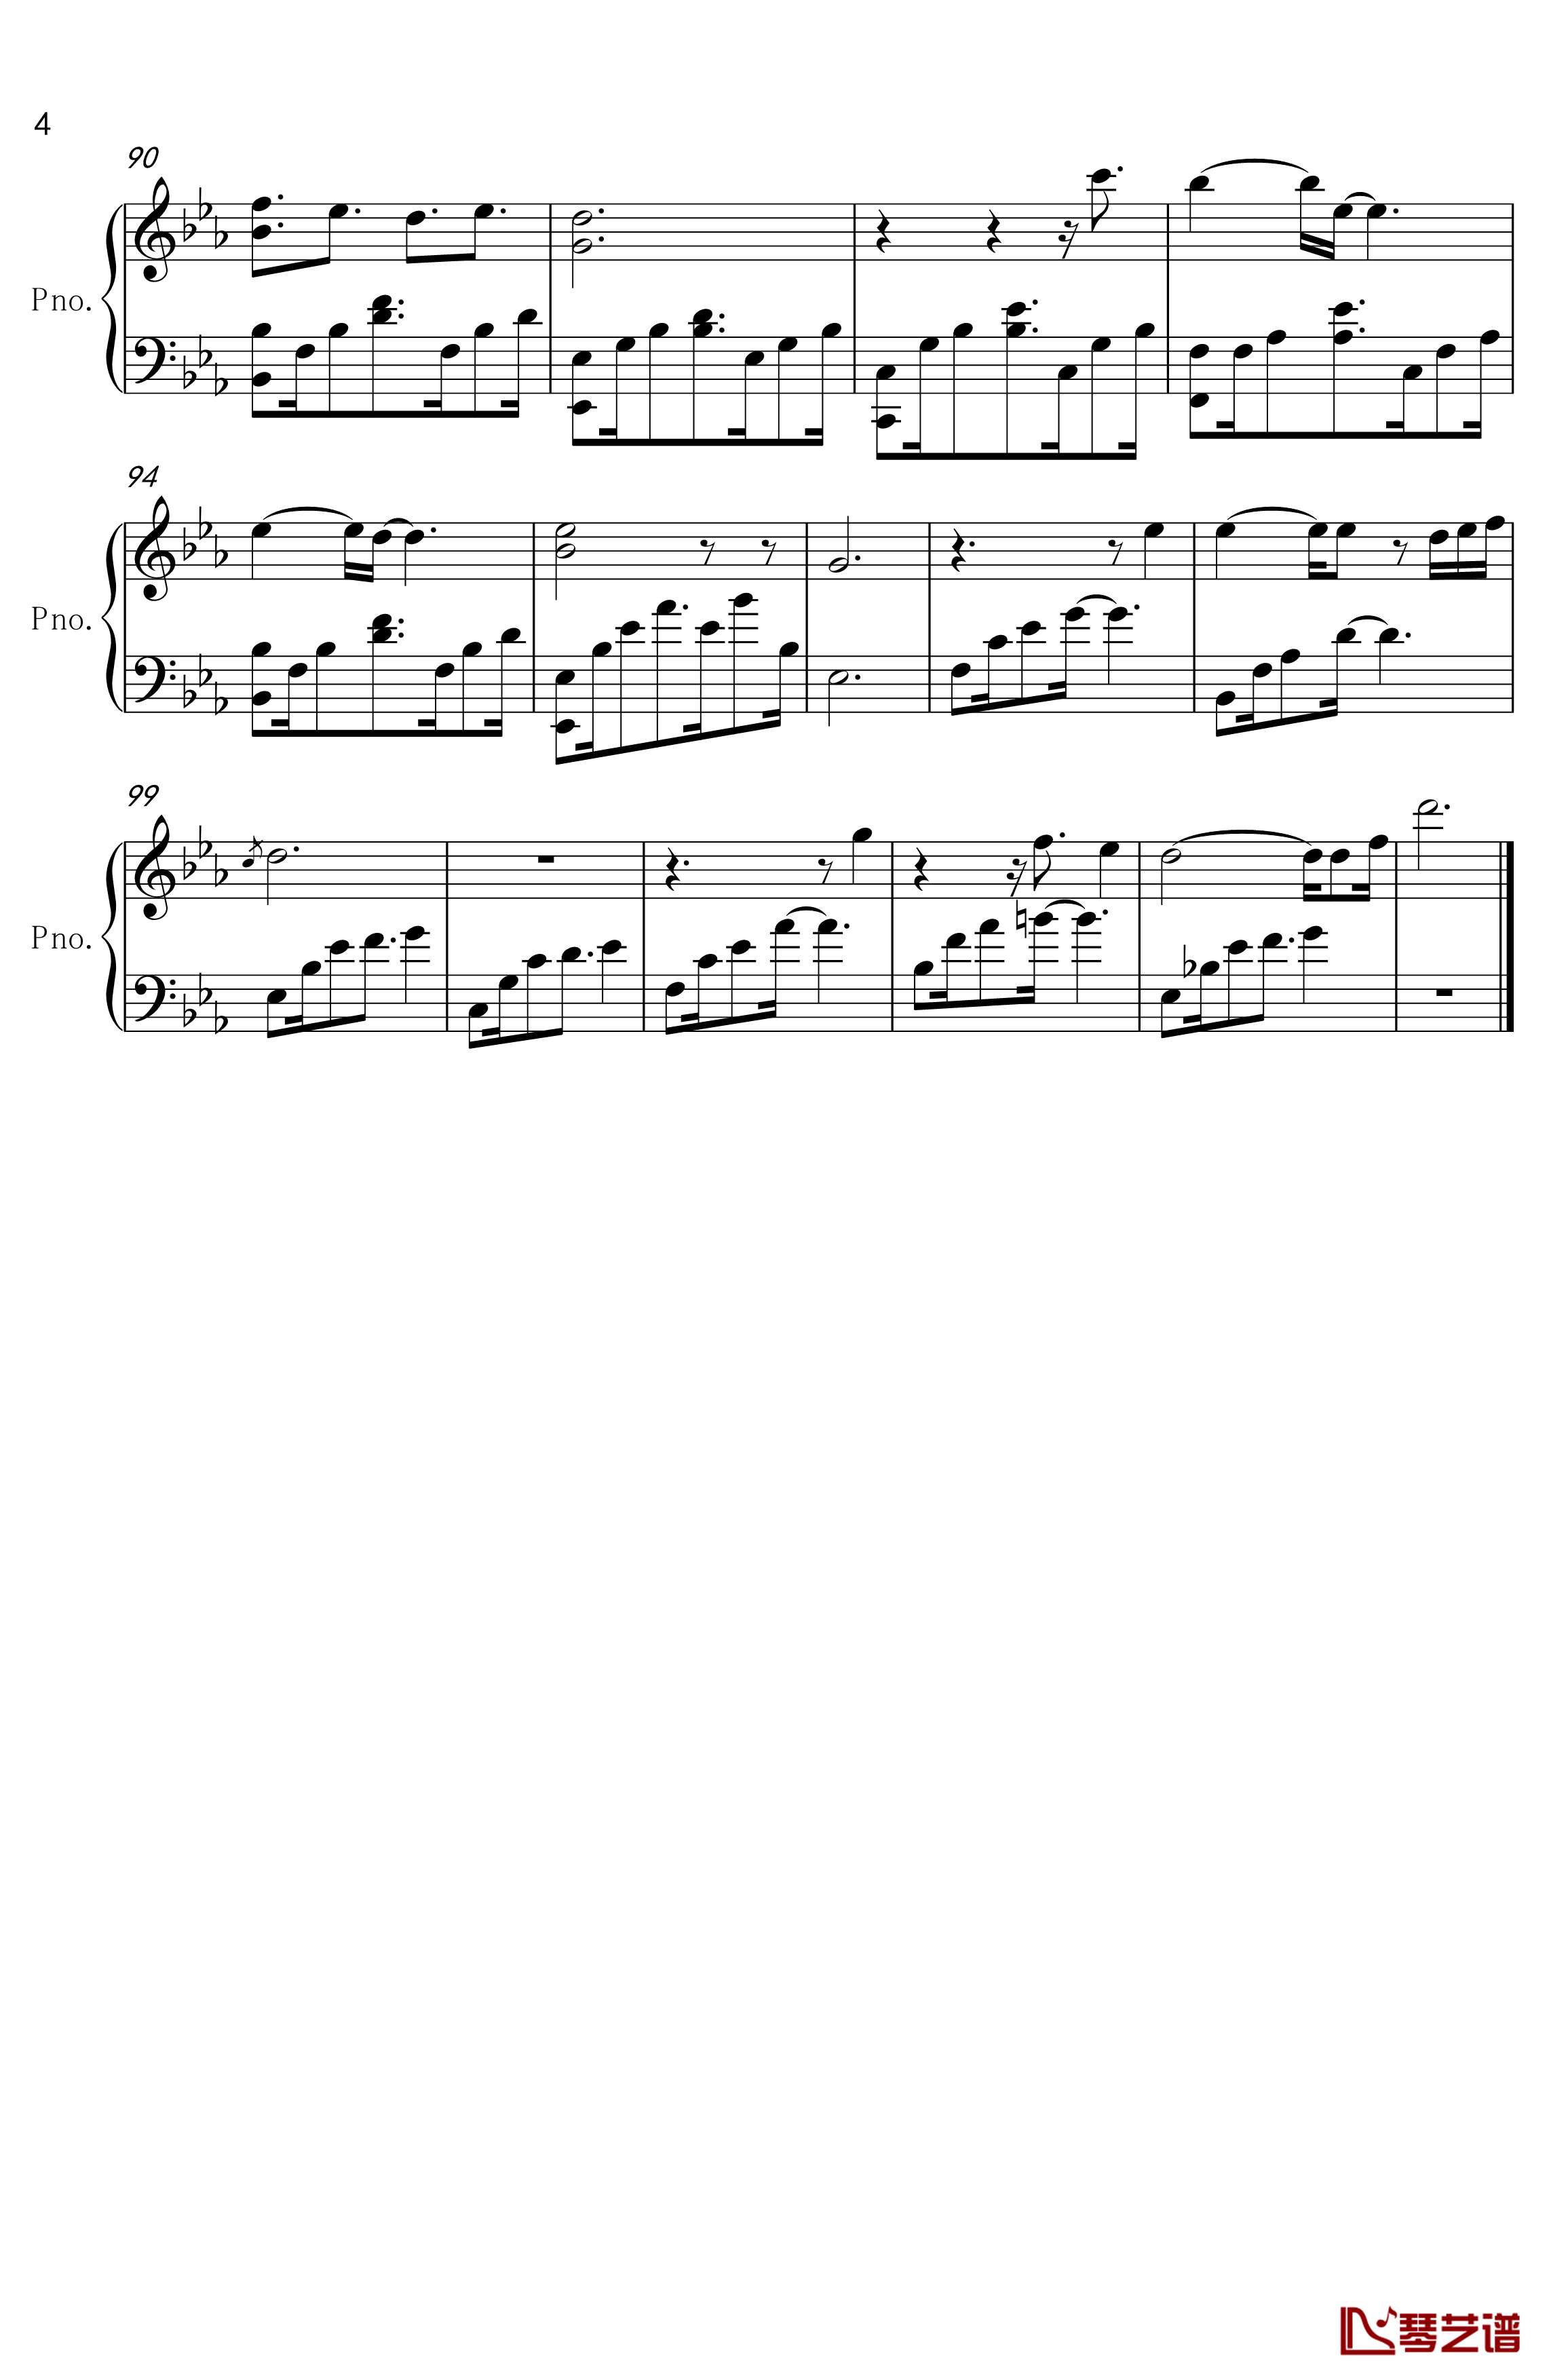 舒伯特玫瑰钢琴谱-钢琴伴奏版-蓝心羽4